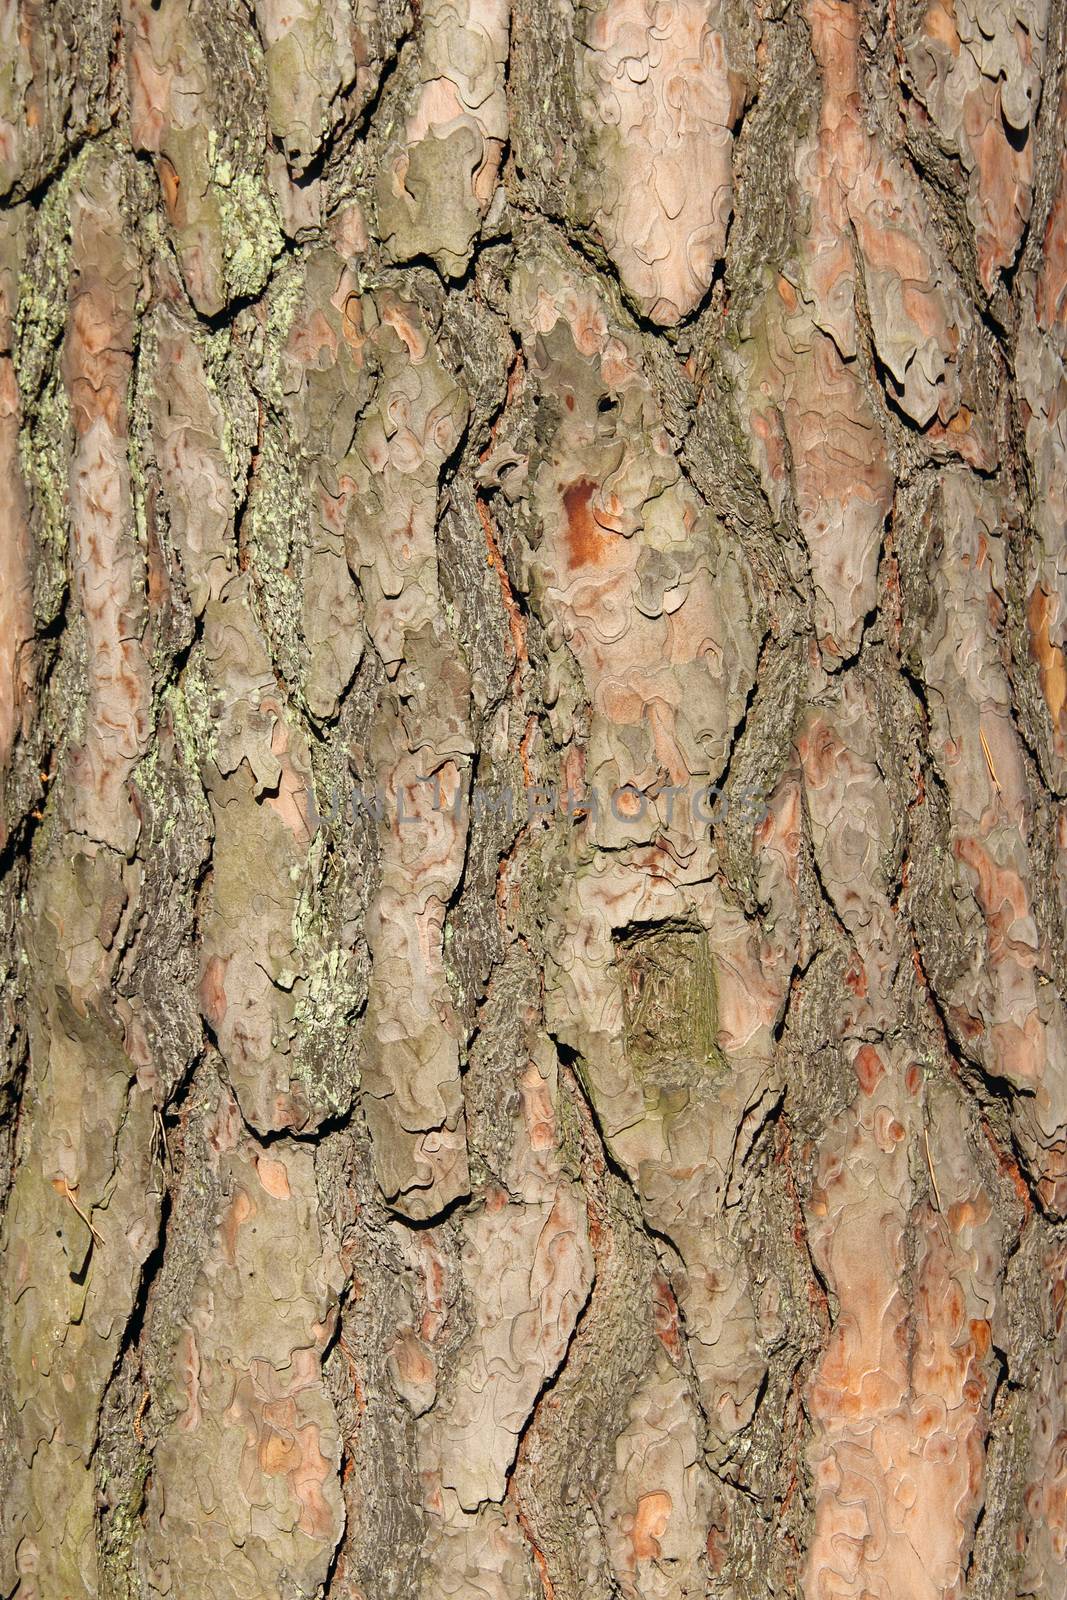 Pine bark background by destillat